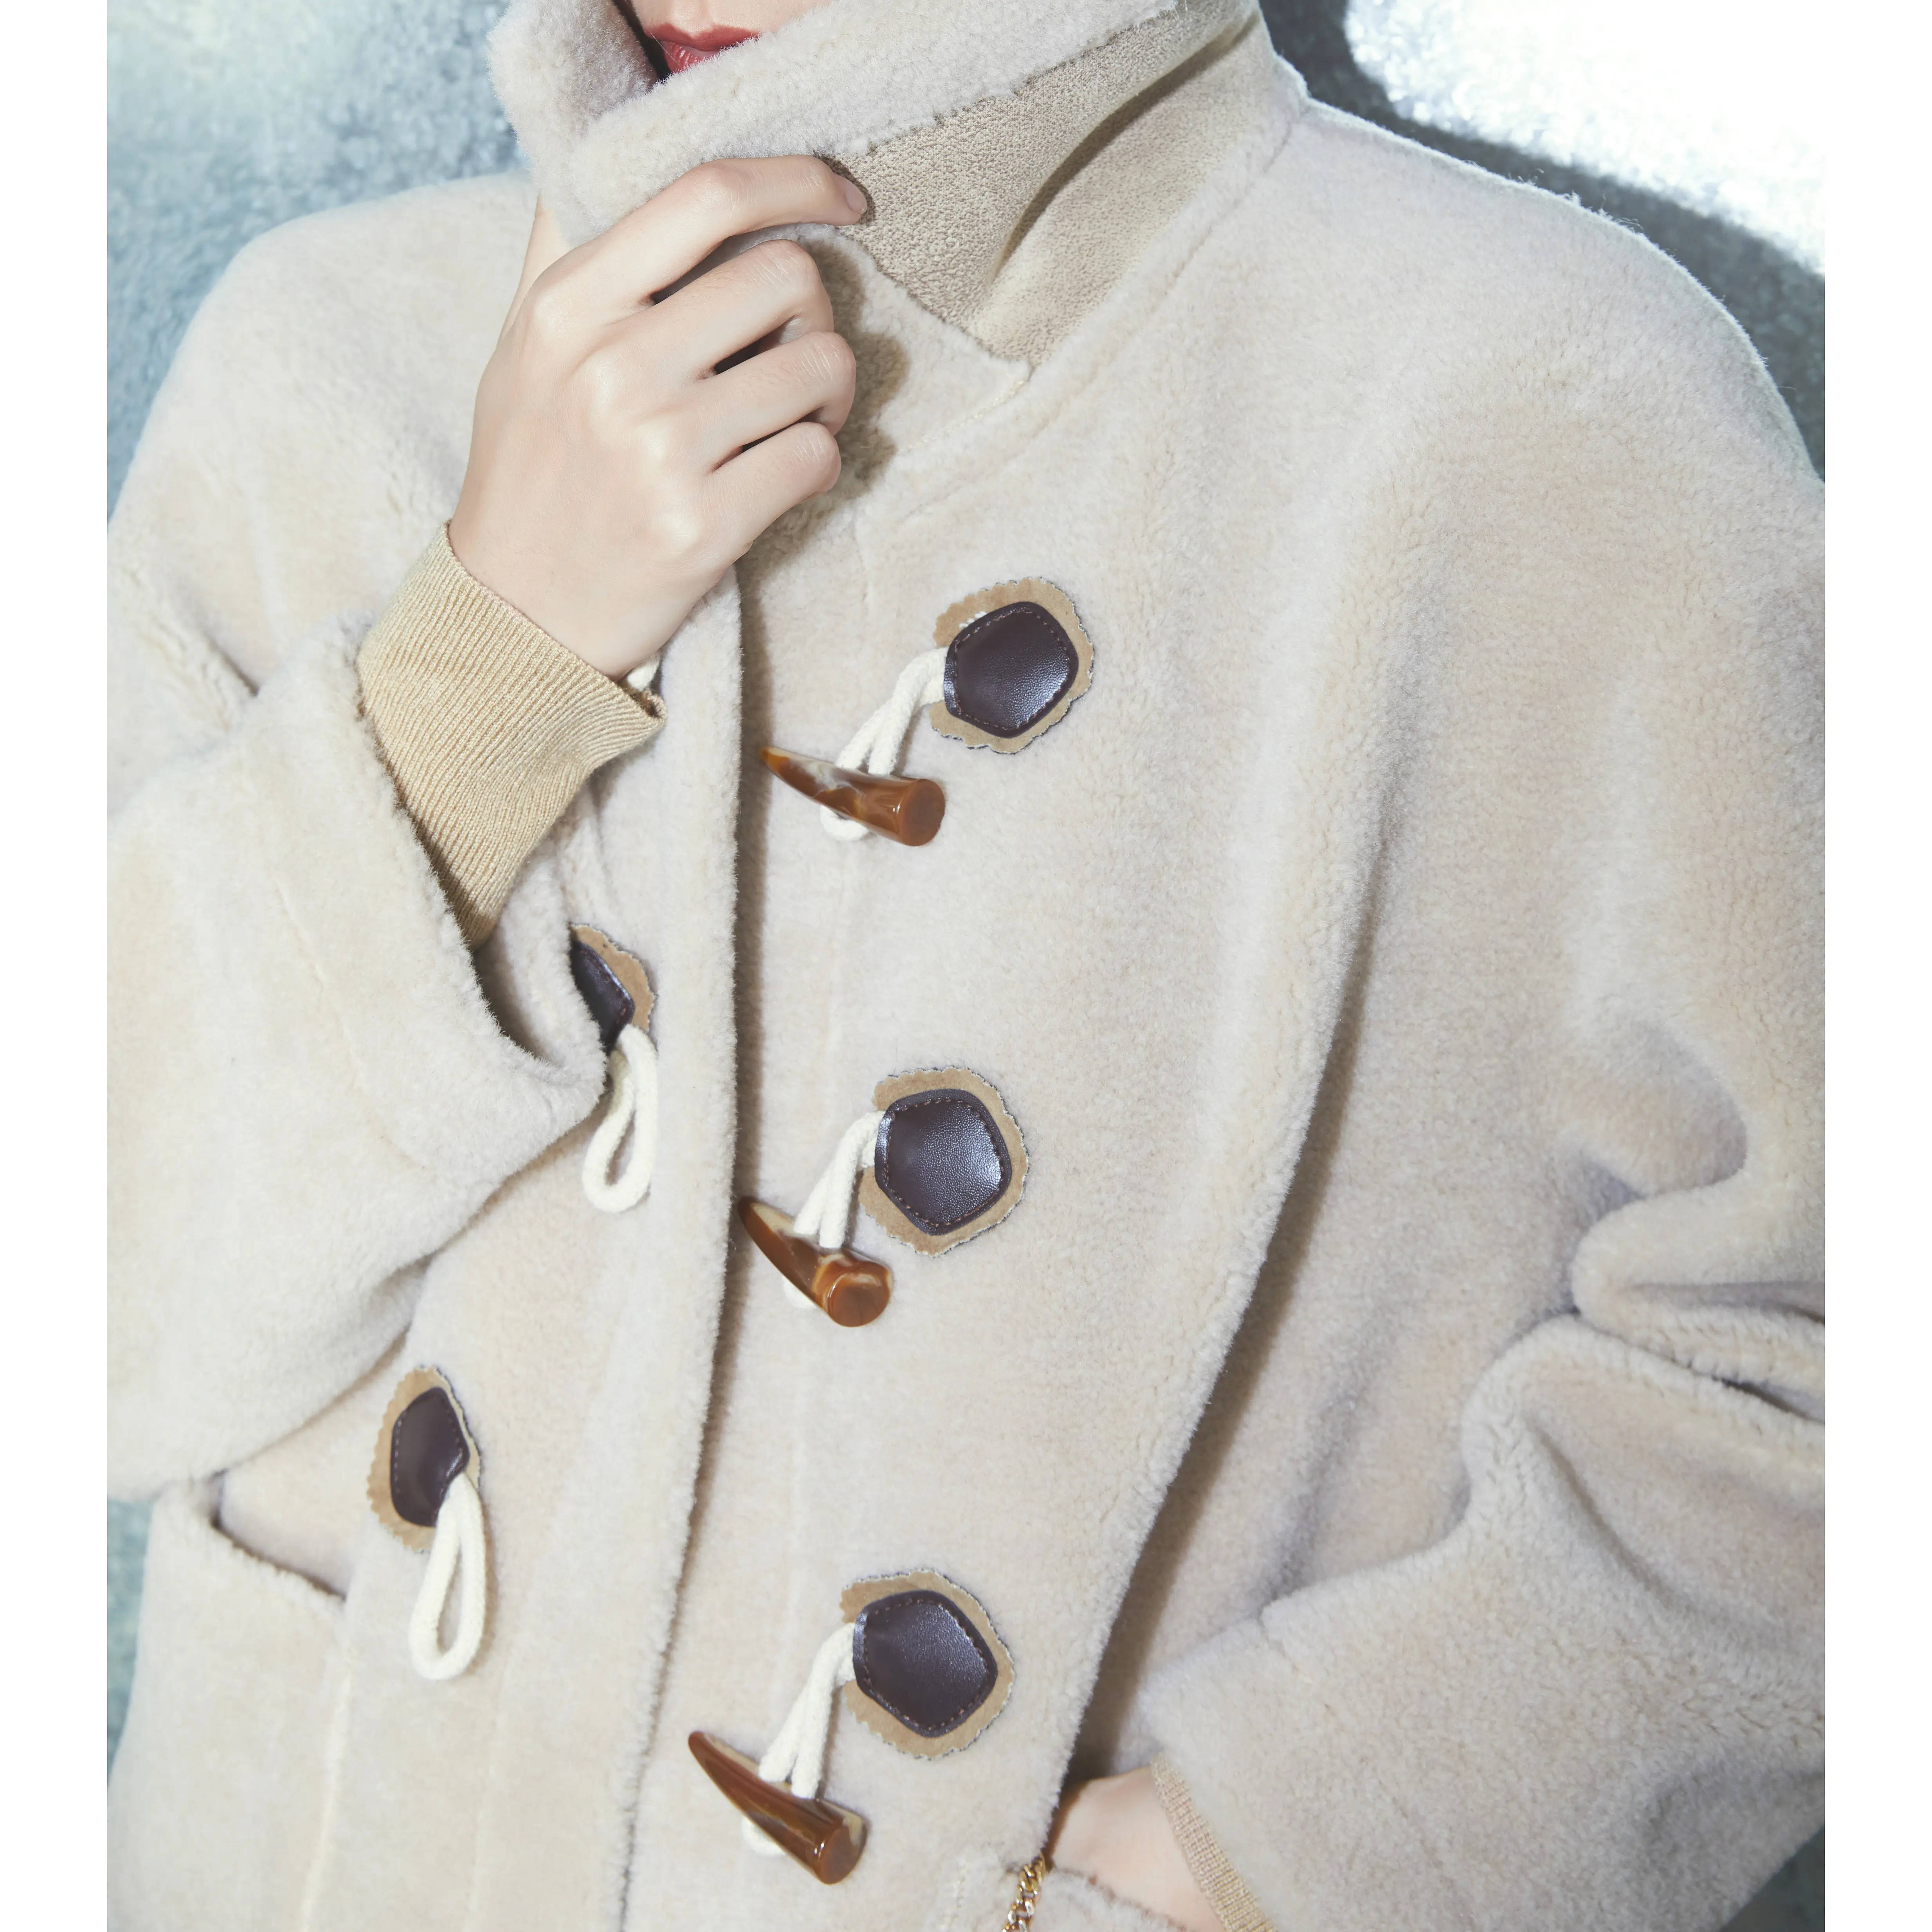 Ofis bayanlar kış giyim sıcak tutan kaban Retro yaka uzun kadın ceketi dokuma kış giysileri düz boyalı geçiş düğmesi polar